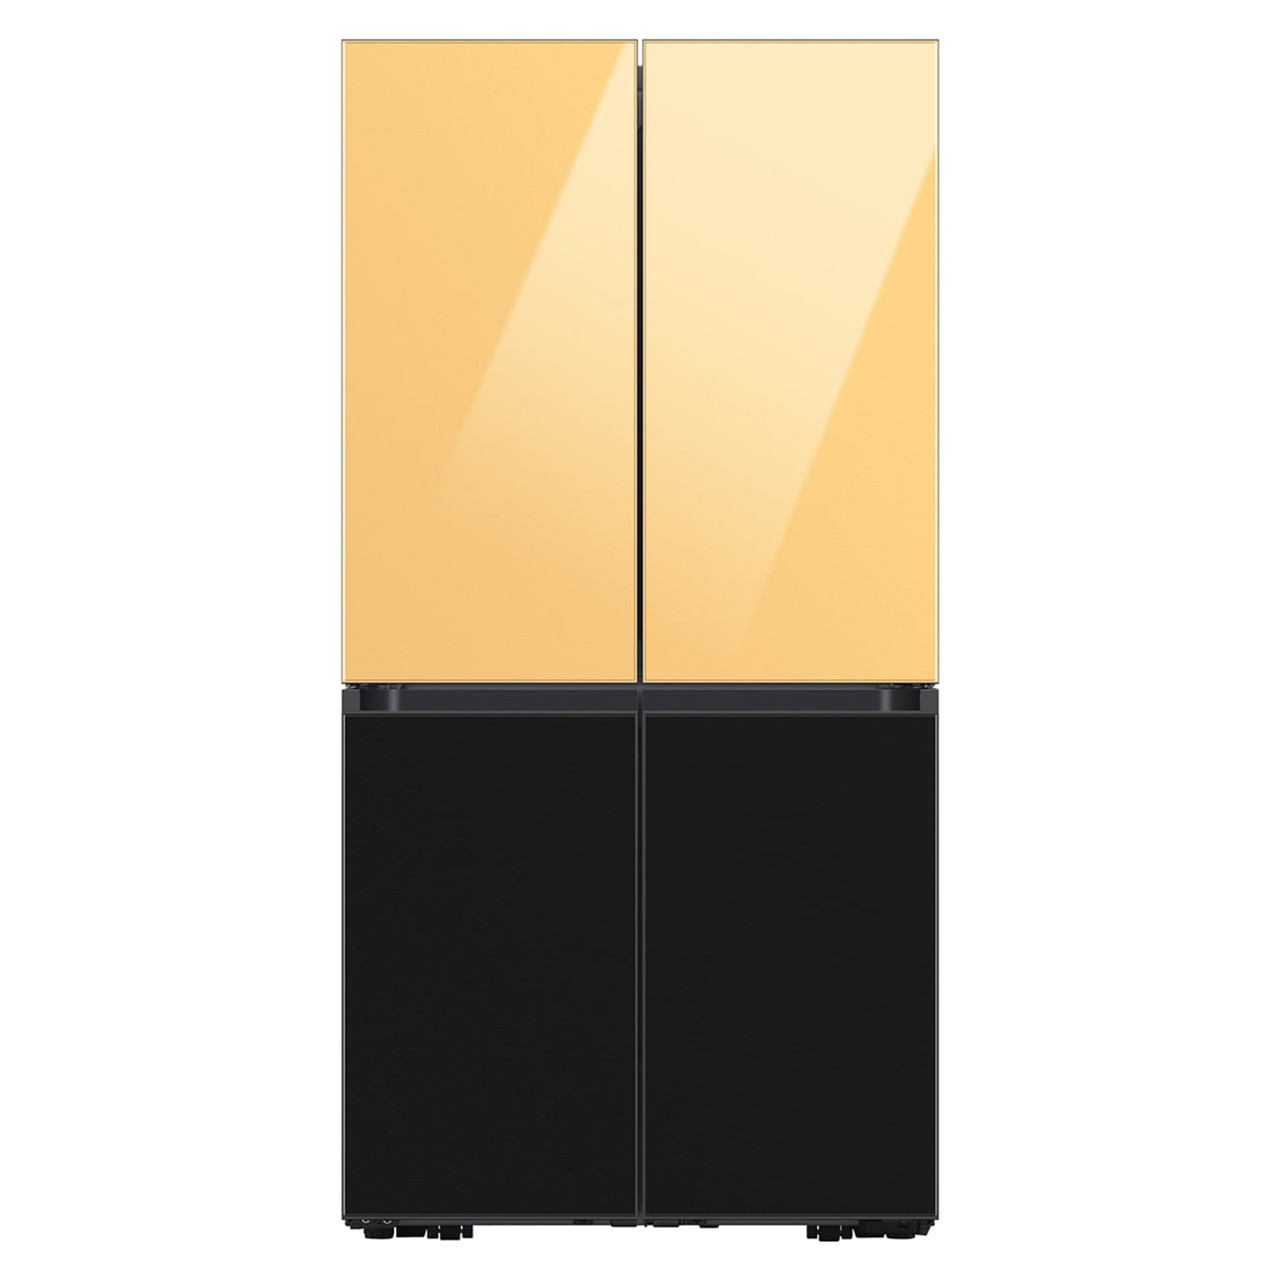 Samsung BESPOKE 4-Door Flex™ Refrigerator Panel in Sunrise Yellow - Top Panel